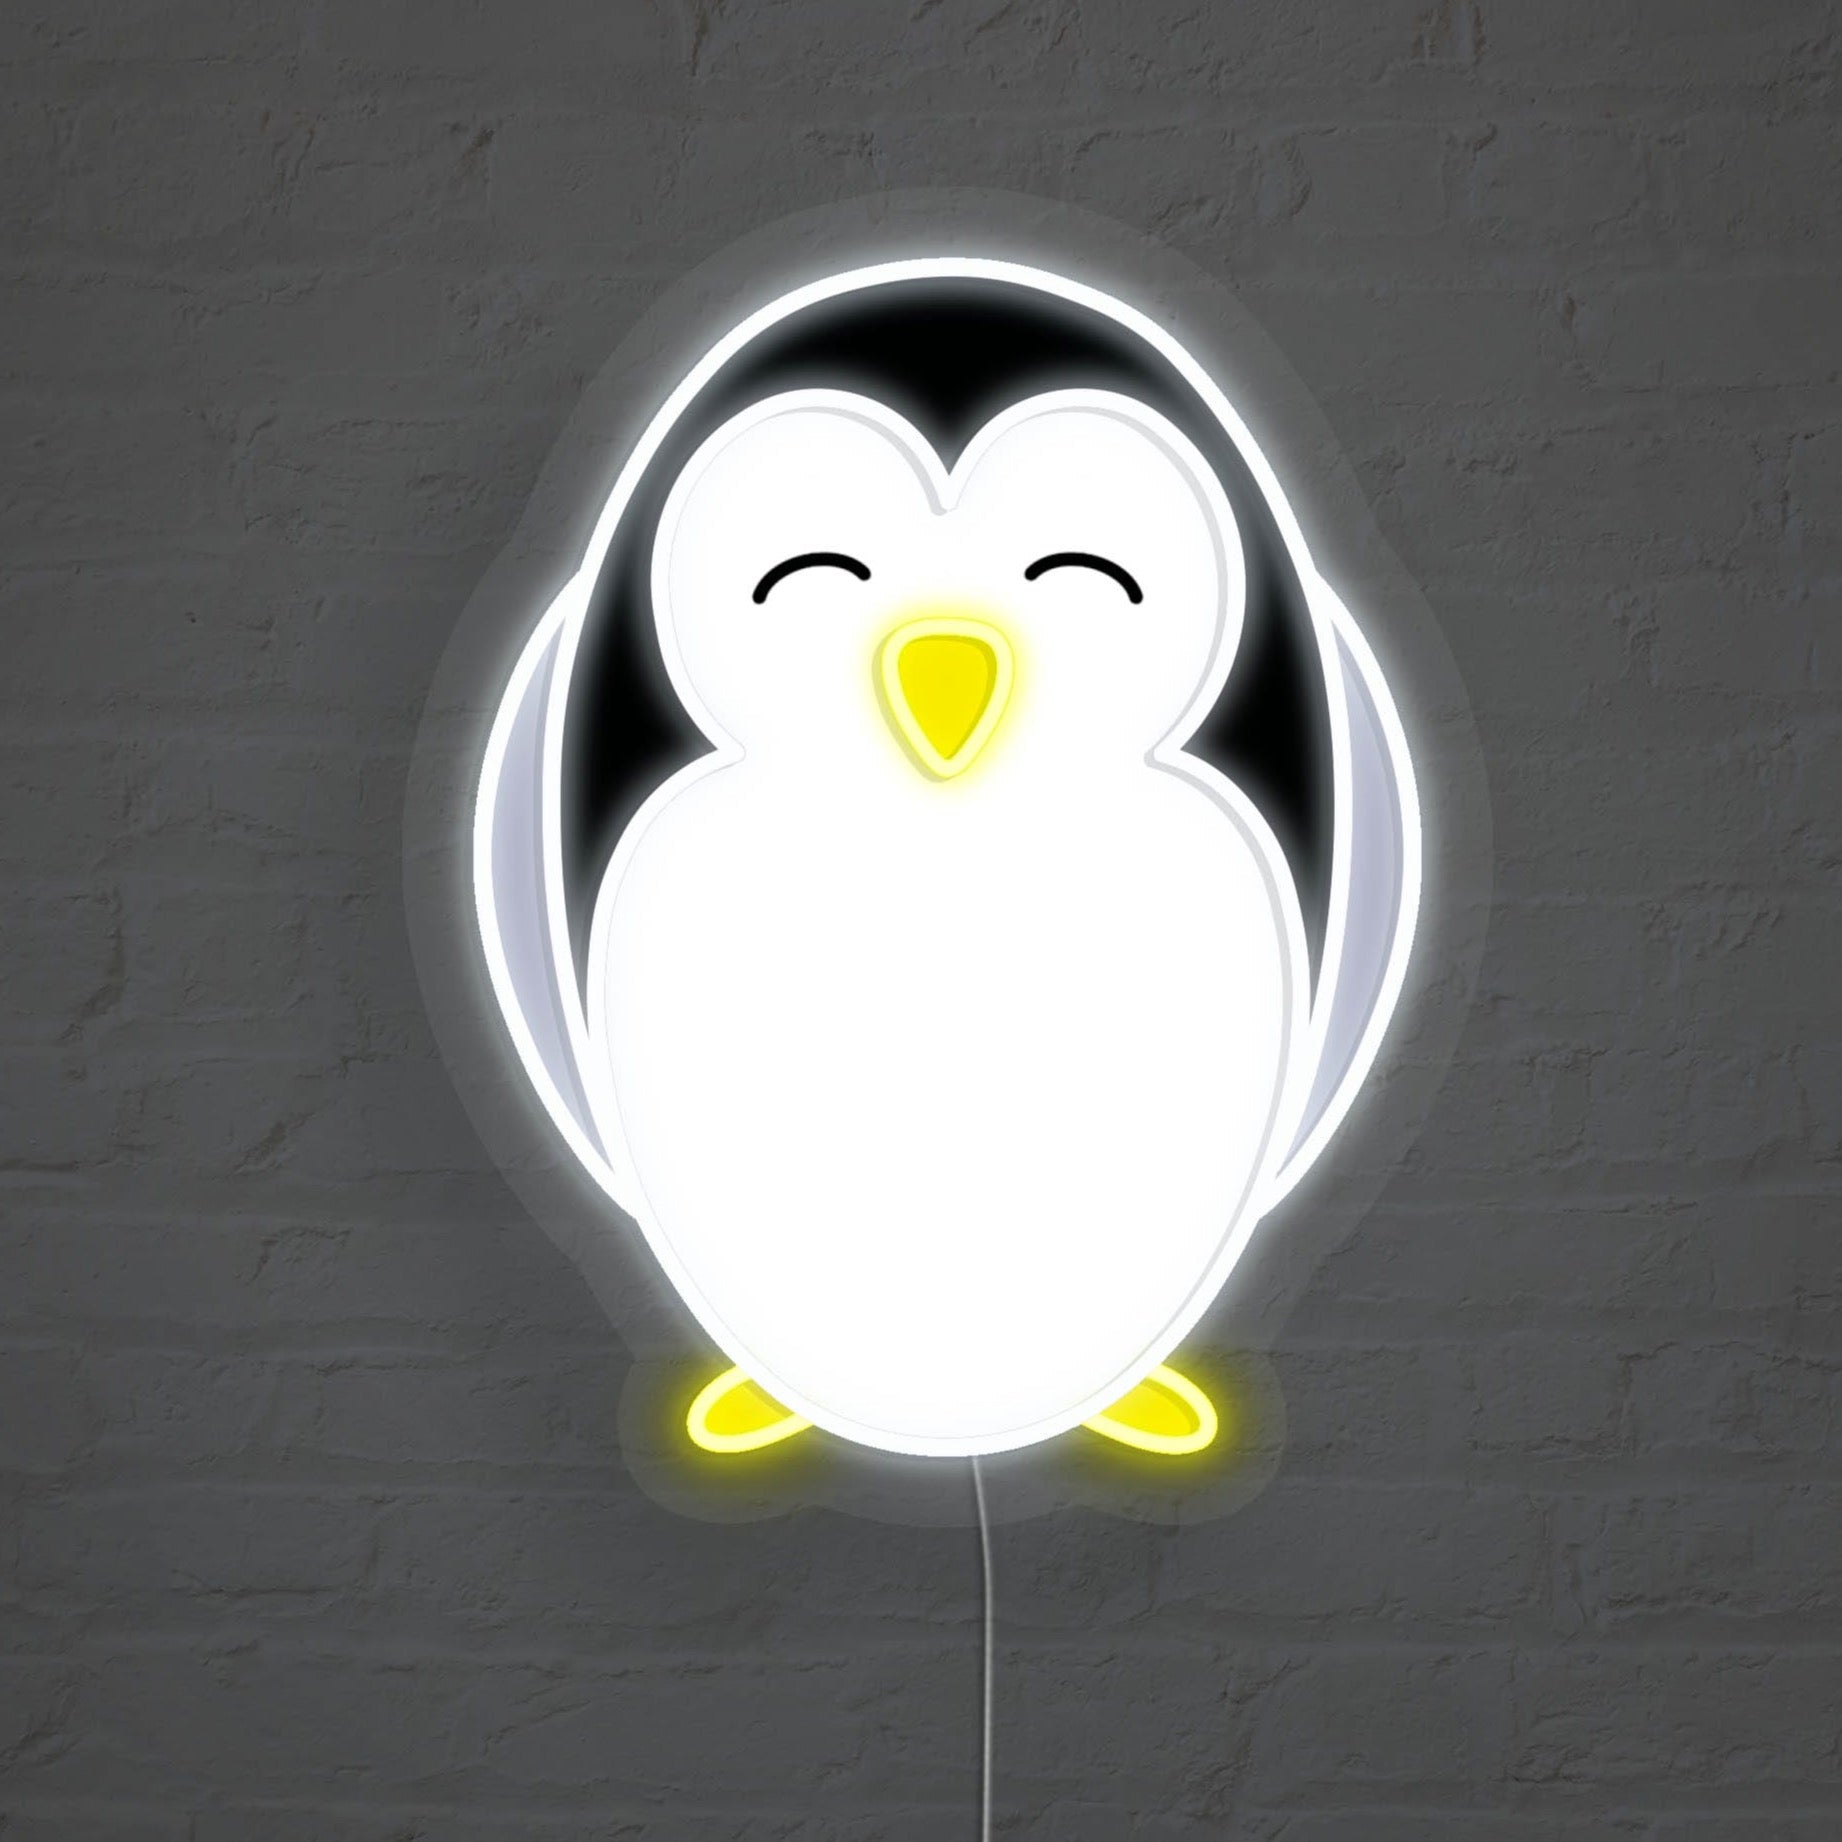 Penguin LED Neon Sign